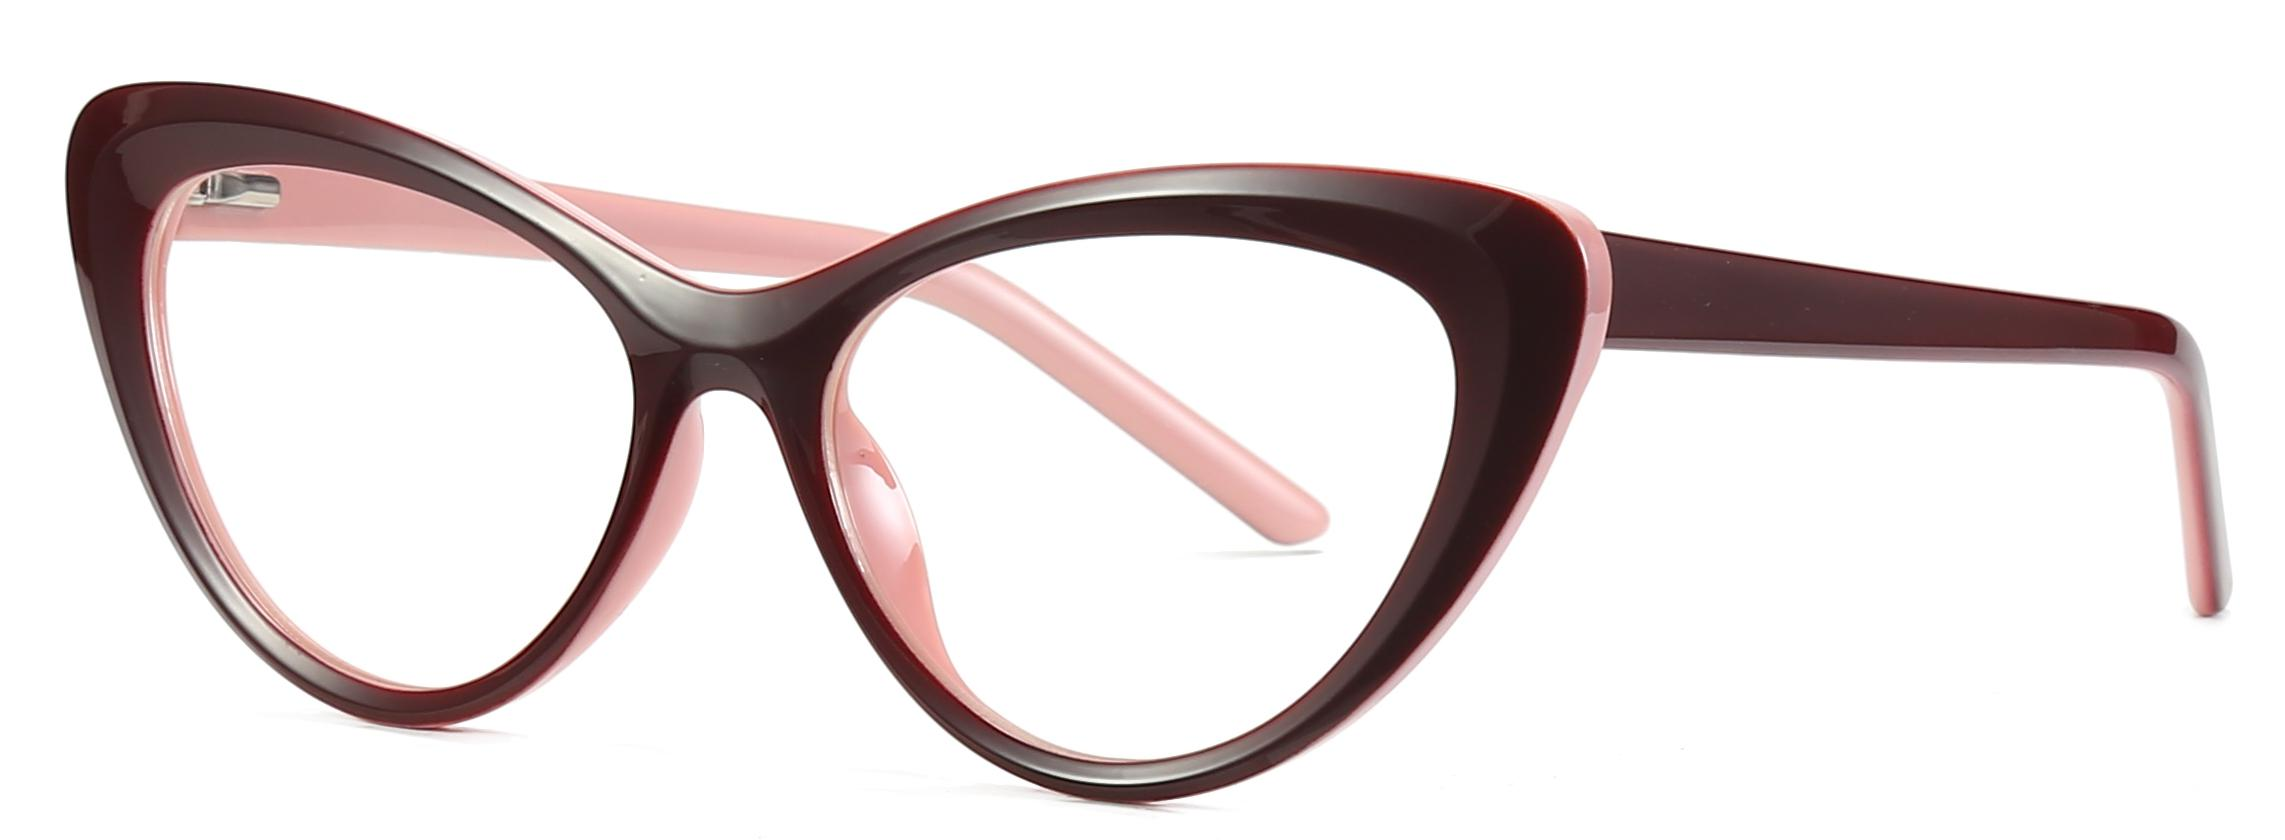 Færdigvarer Mode Cat Eye Shape TR90+CP Anti-blå lyslinse optiske stel til kvinder #2020